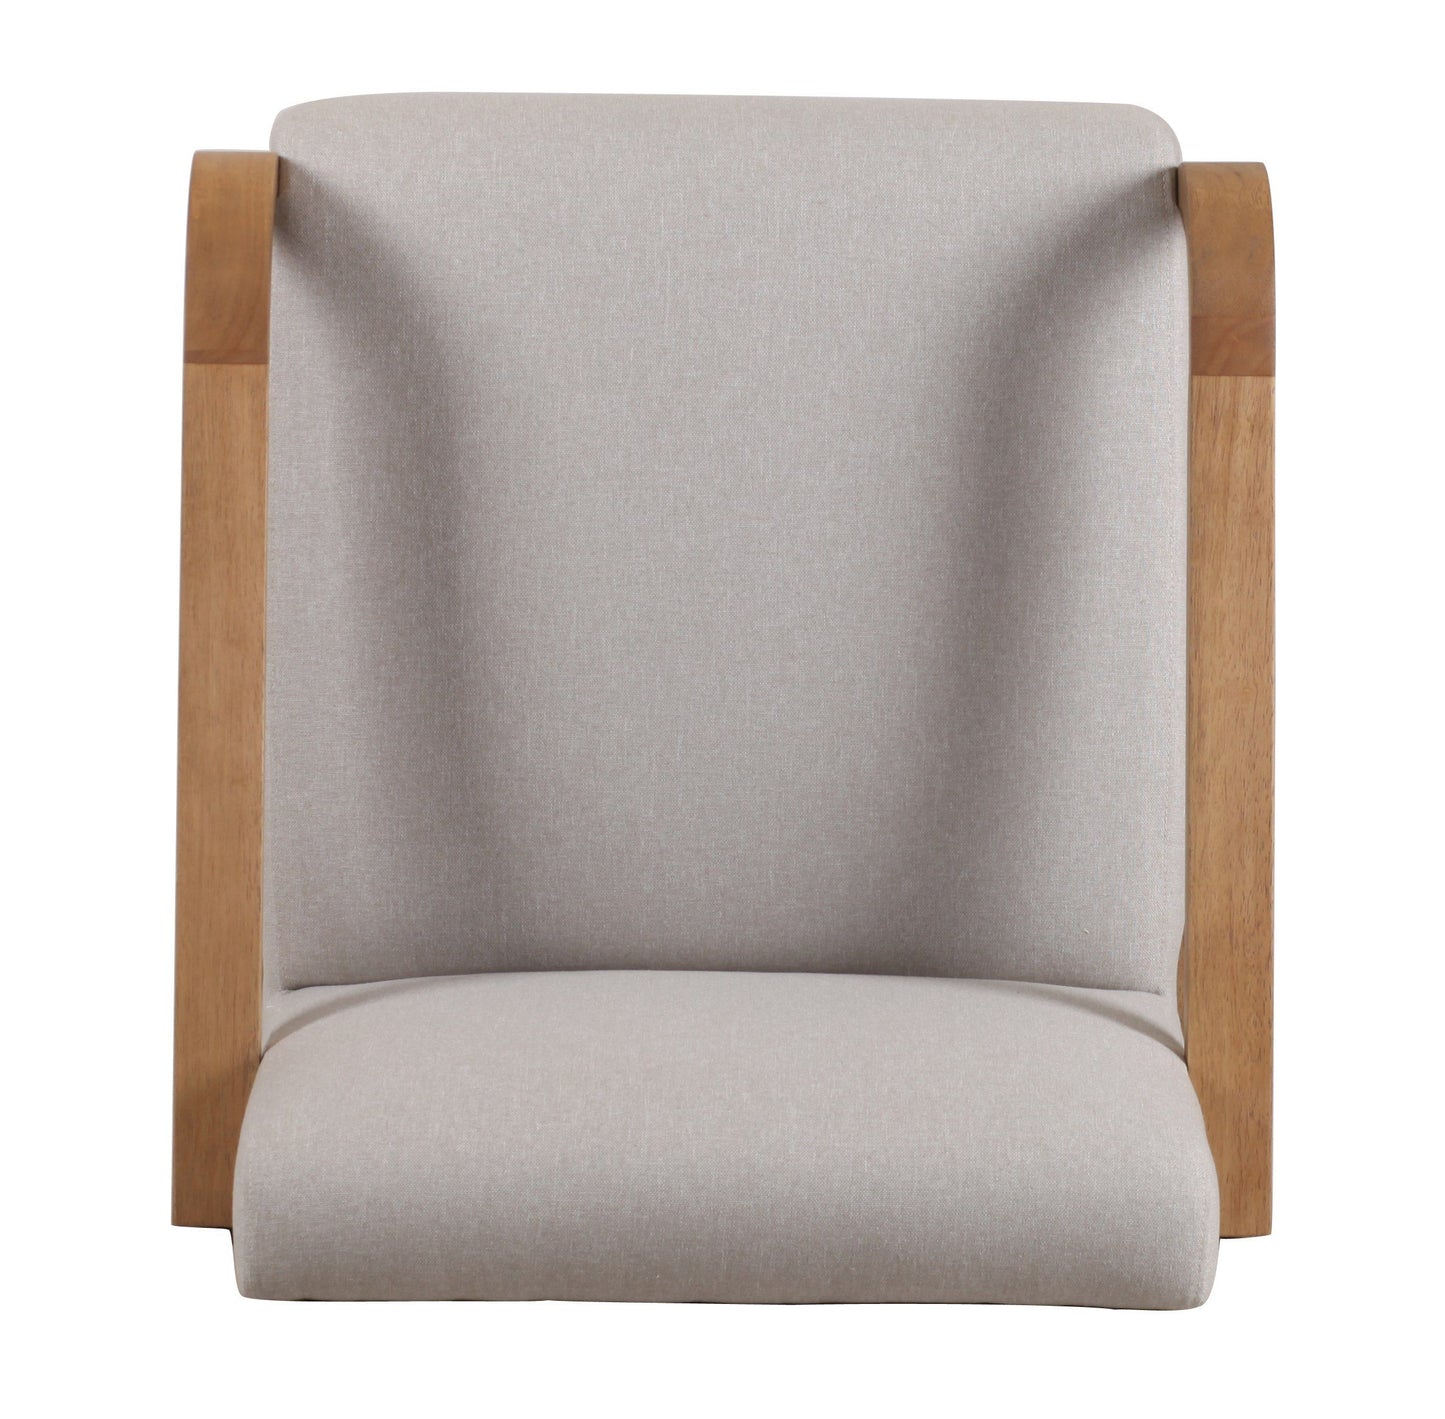 Modrest Sada - Mid-Century Modern Beige Linen + Chestnut Accent Chair